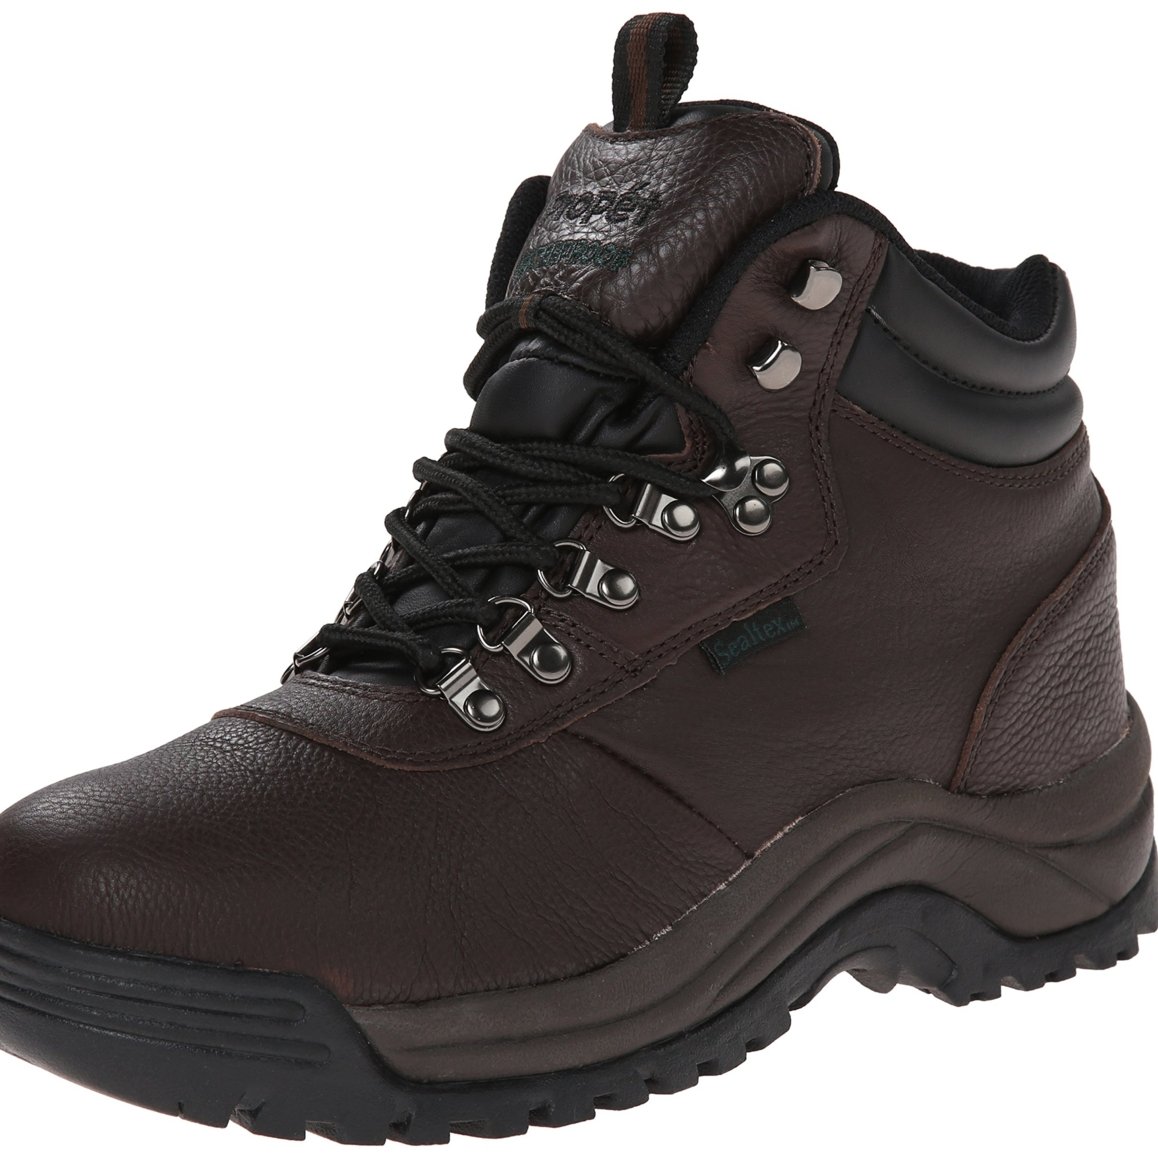 Propet Men's Cliff Walker Hiking Boot Bronco Brown - M3188BRO - BRONCO BROWN, 7-D